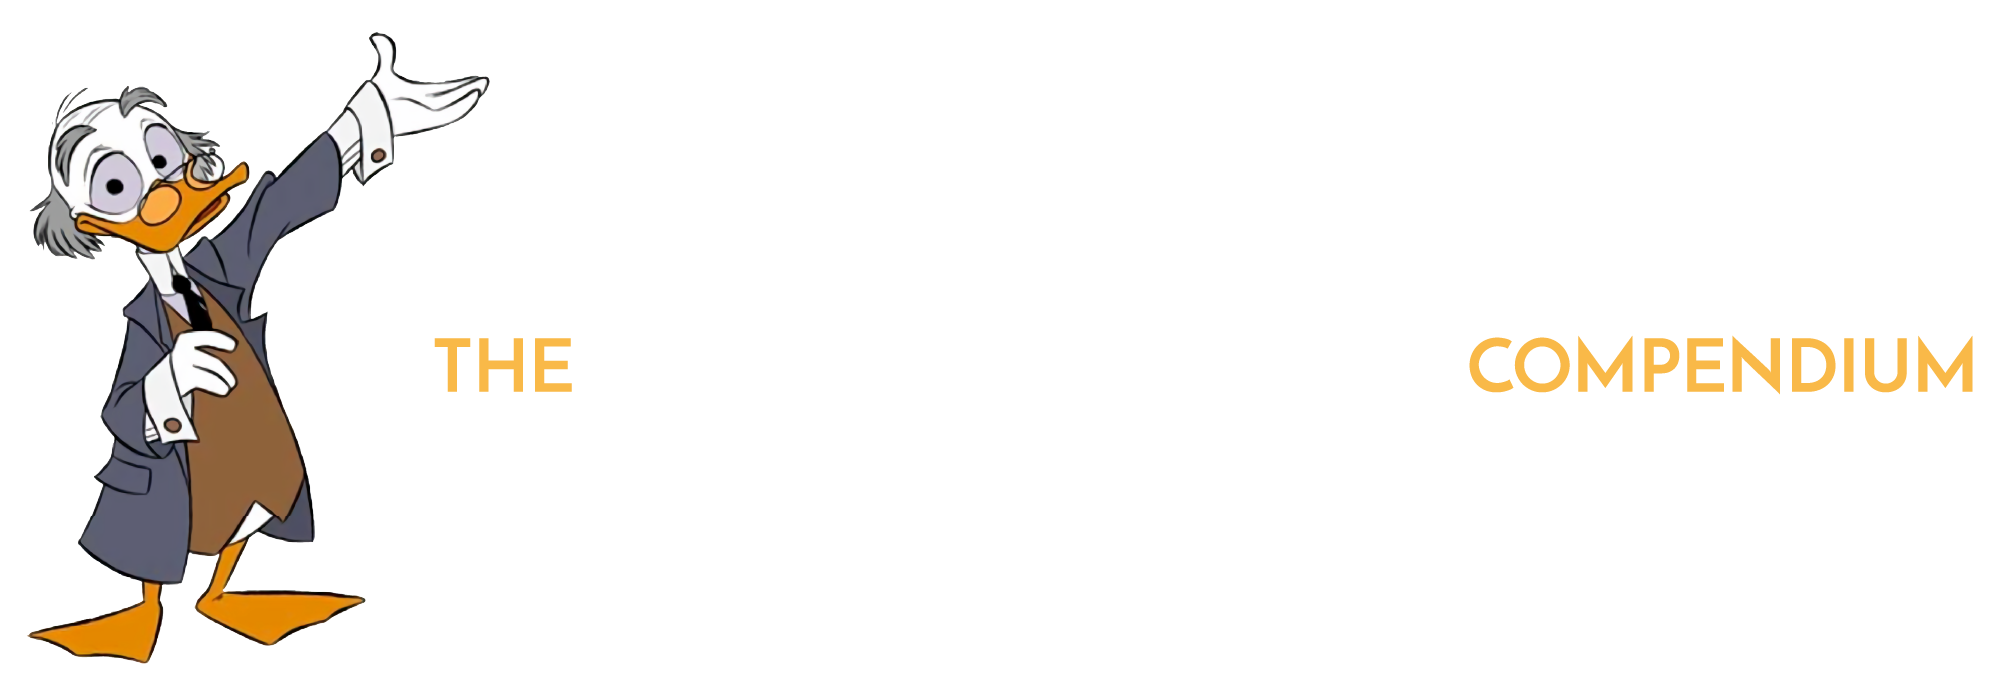 The Disney Compendium